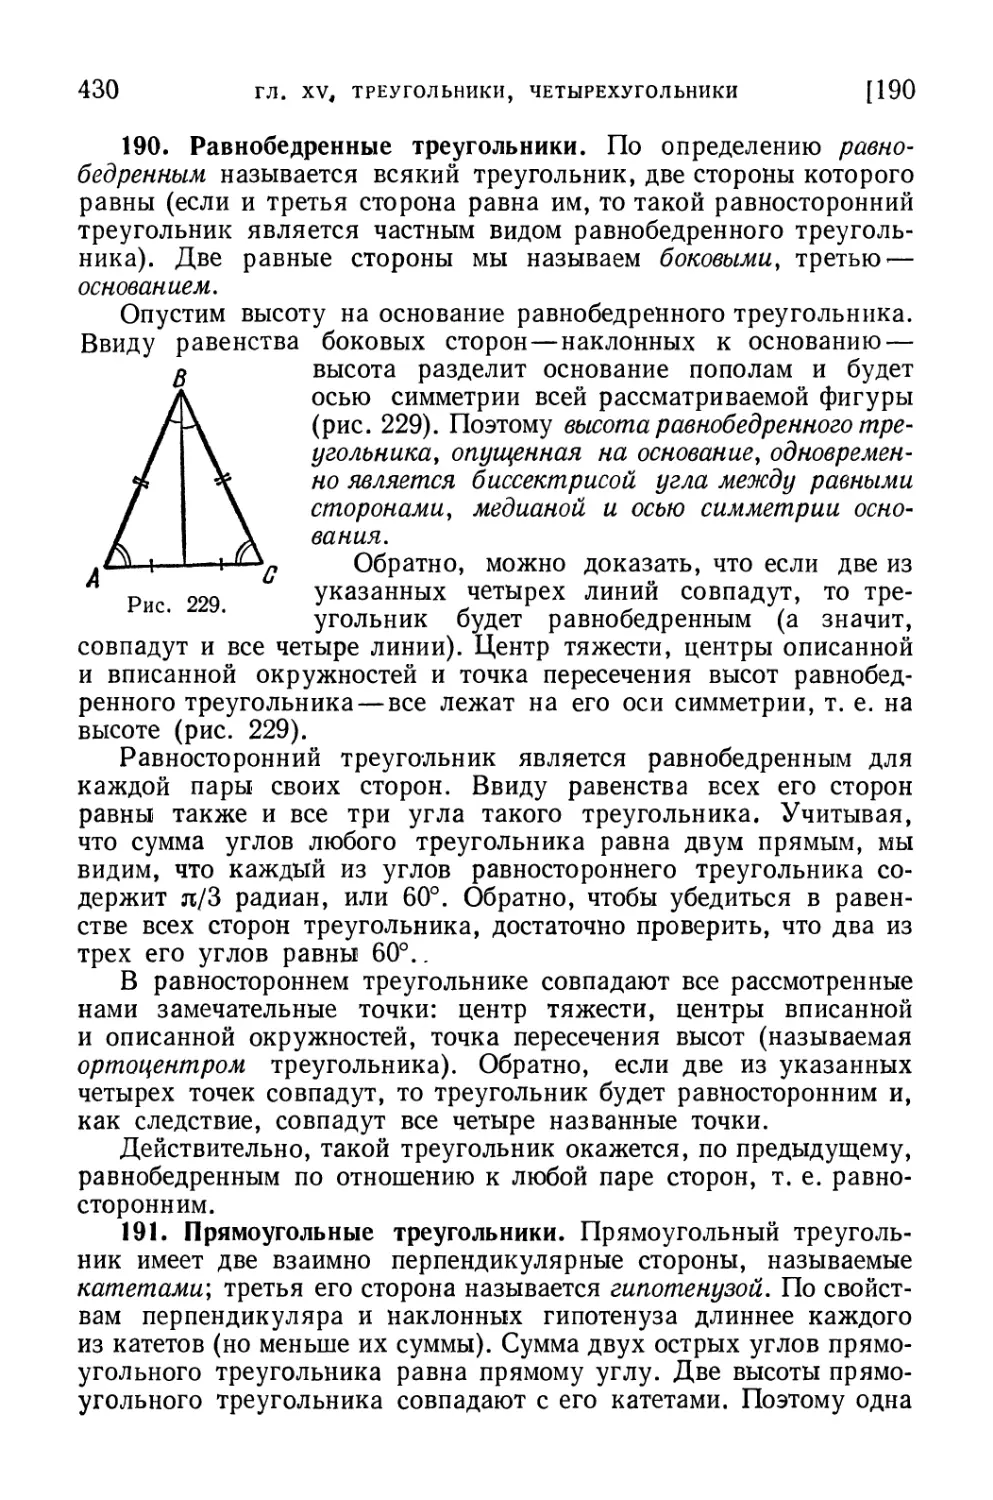 191. Прямоугольные треугольники